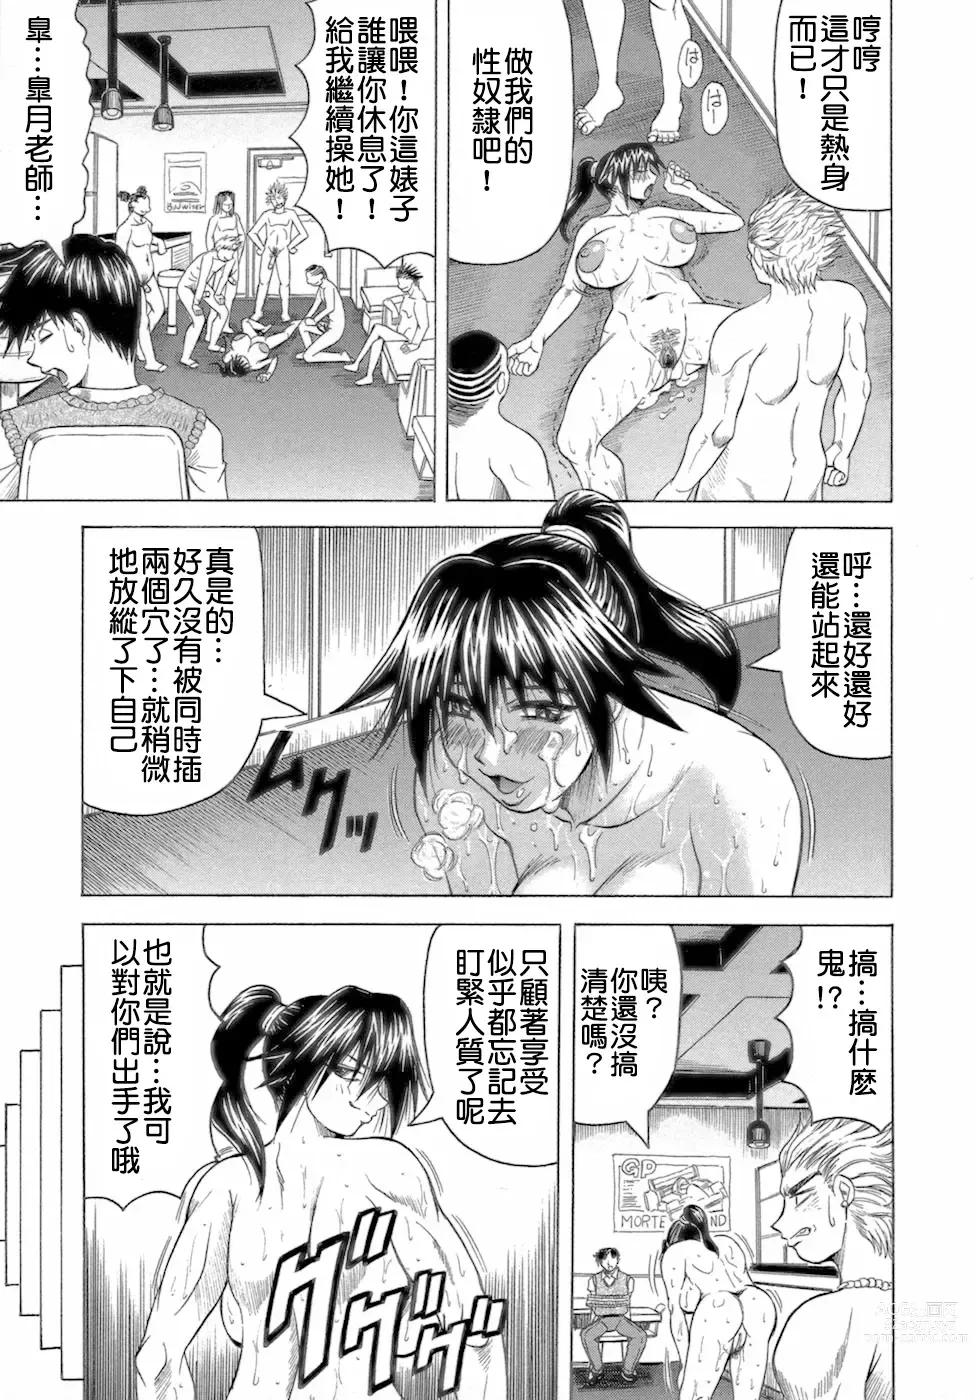 Page 63 of manga Ichigeki Nousatsu Satsuki-sensei